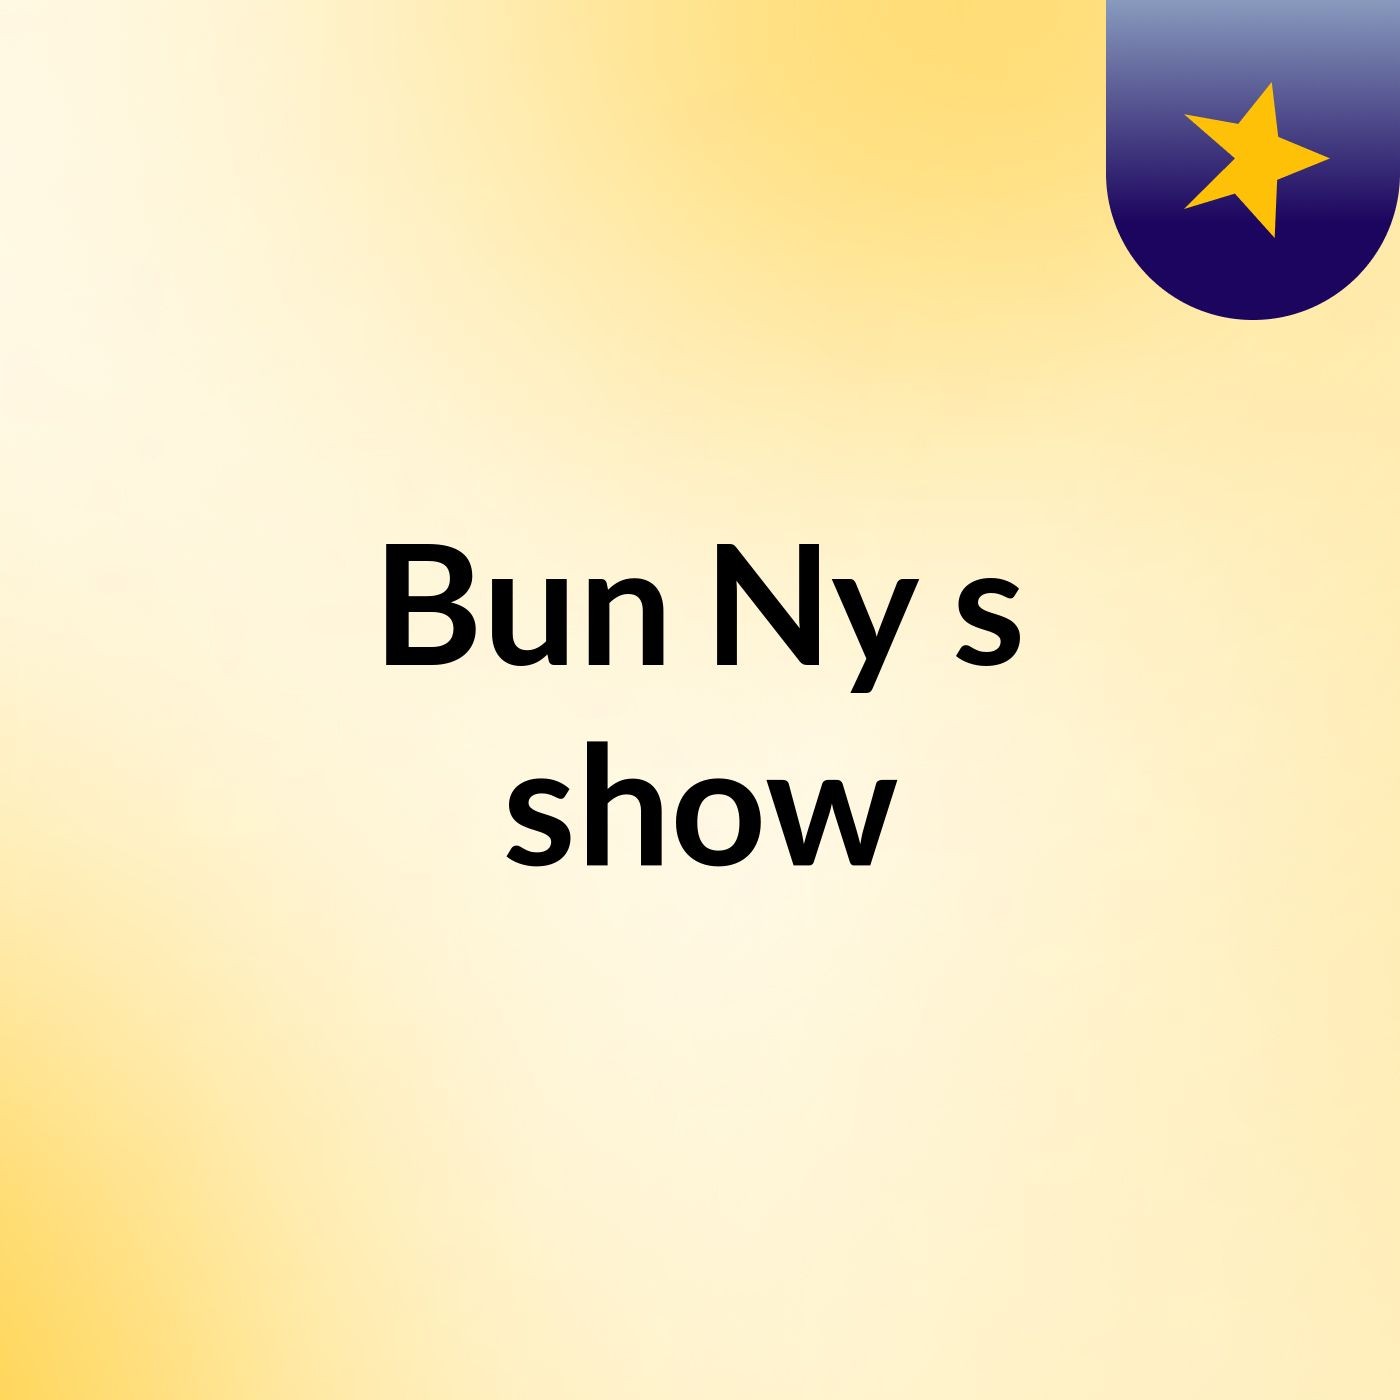 Bun Ny's show